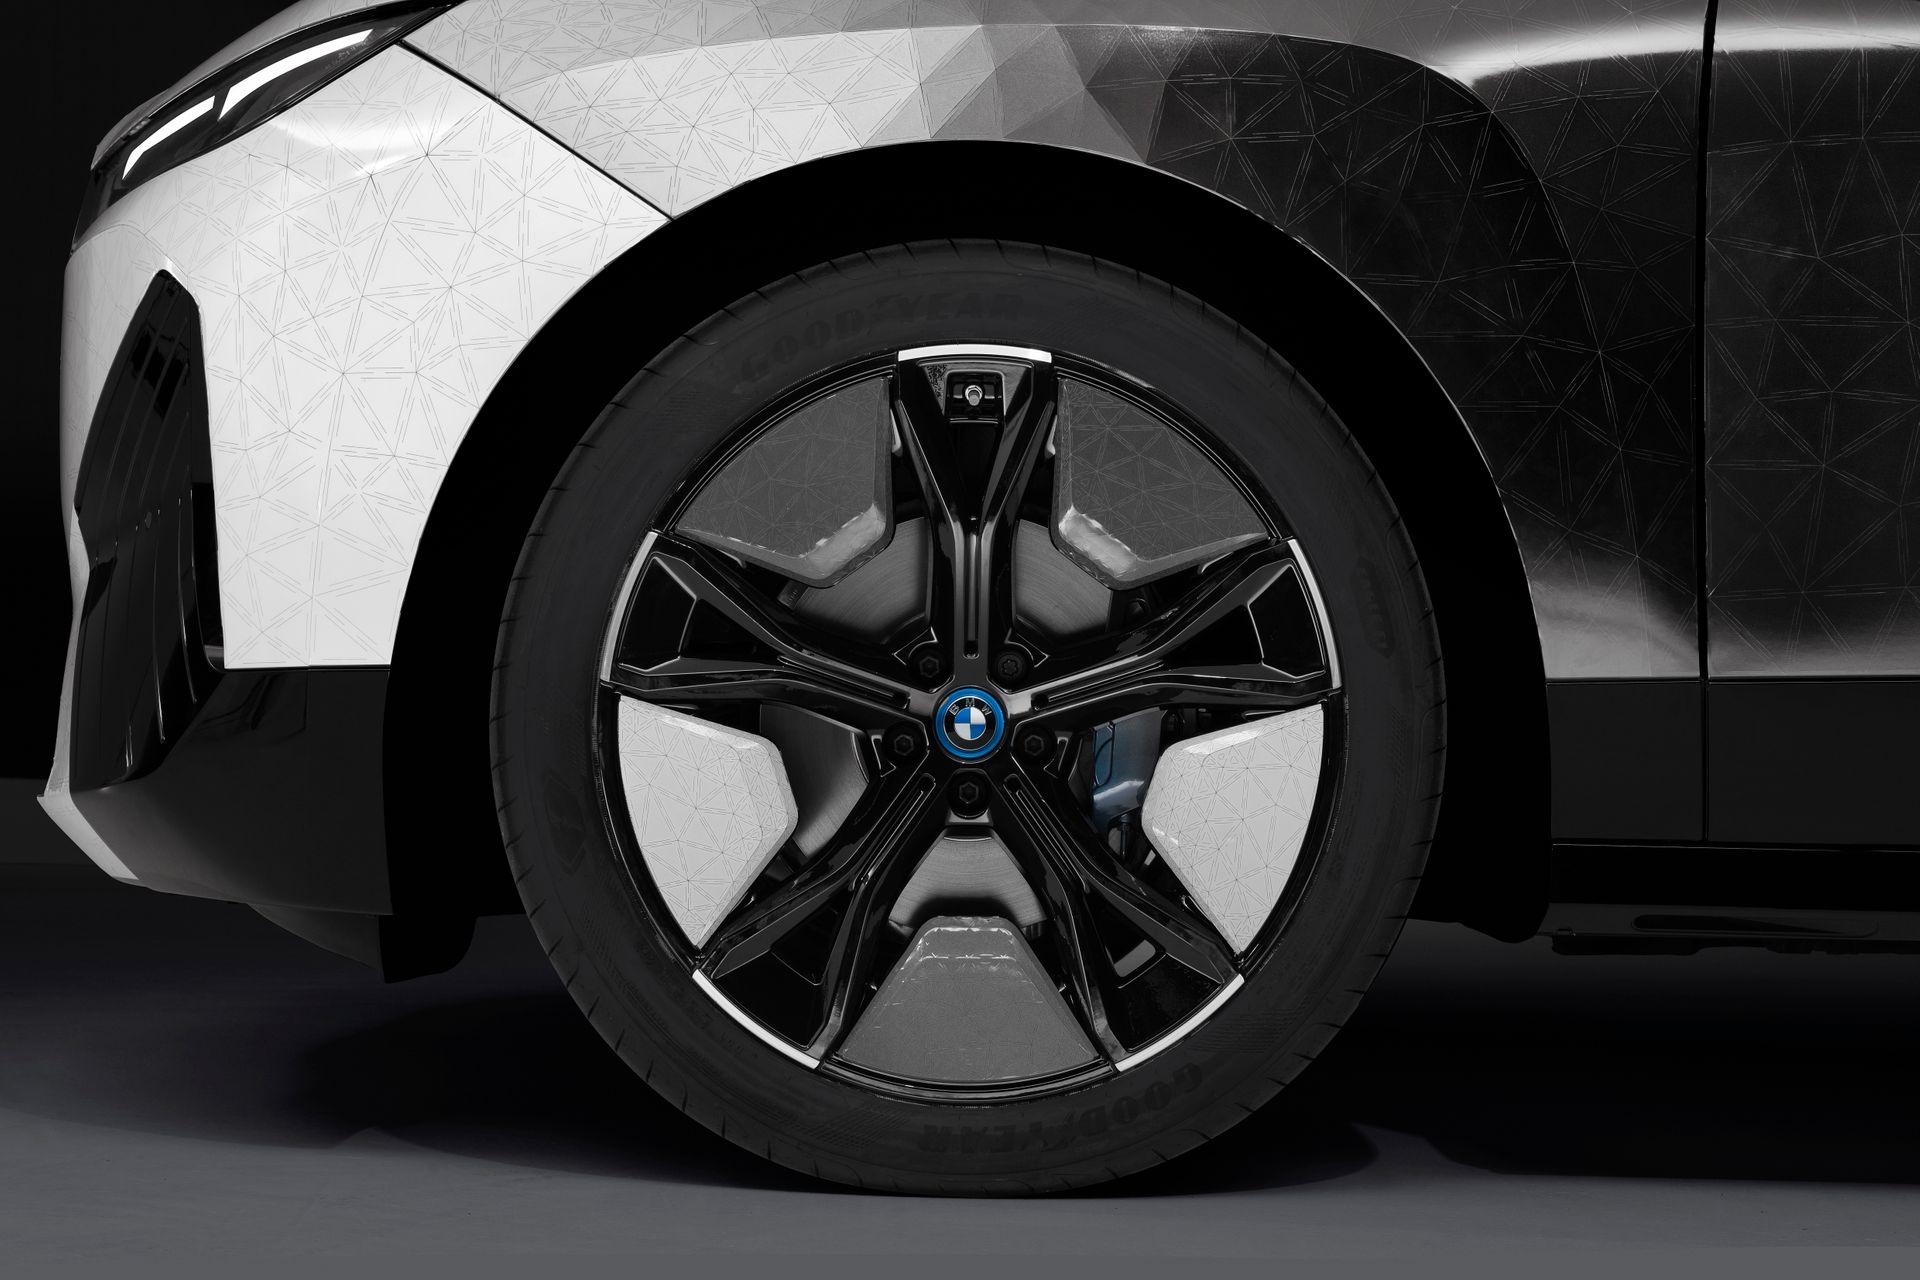 Деталь колесной арки ультра-роскошного iX Flow: по запросу электрического импульса электрофоретическая технология, созданная BMW в сотрудничестве с E Ink, выводит на поверхность различные цветовые пигменты, придавая кузову желаемый цвет